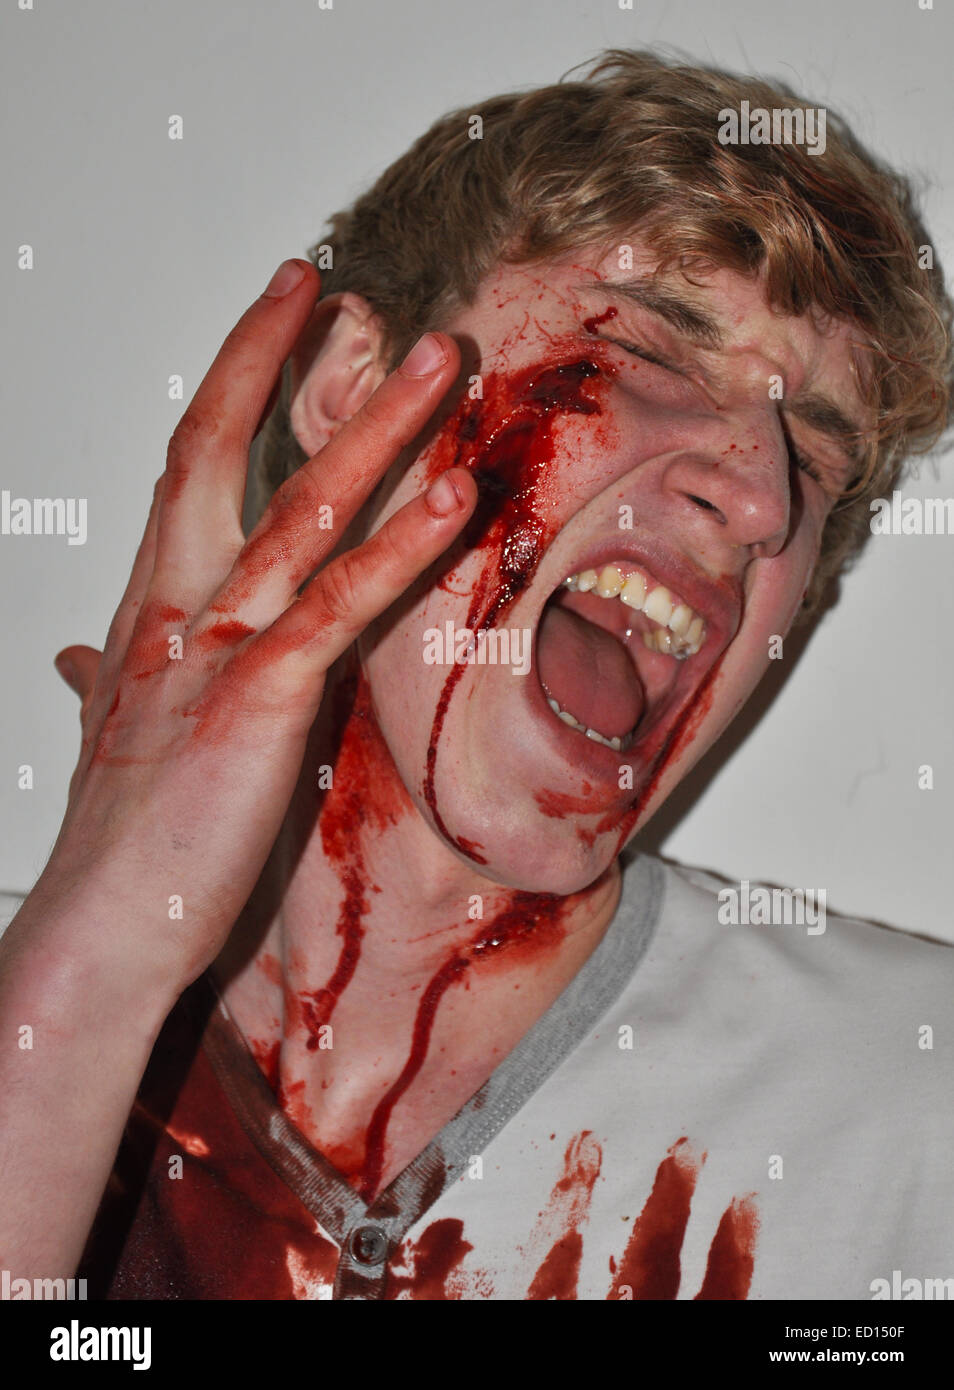 Junge Teenager-Jungen schreien vor Schmerzen mit Blut Prothesen über Gesicht Stockfoto